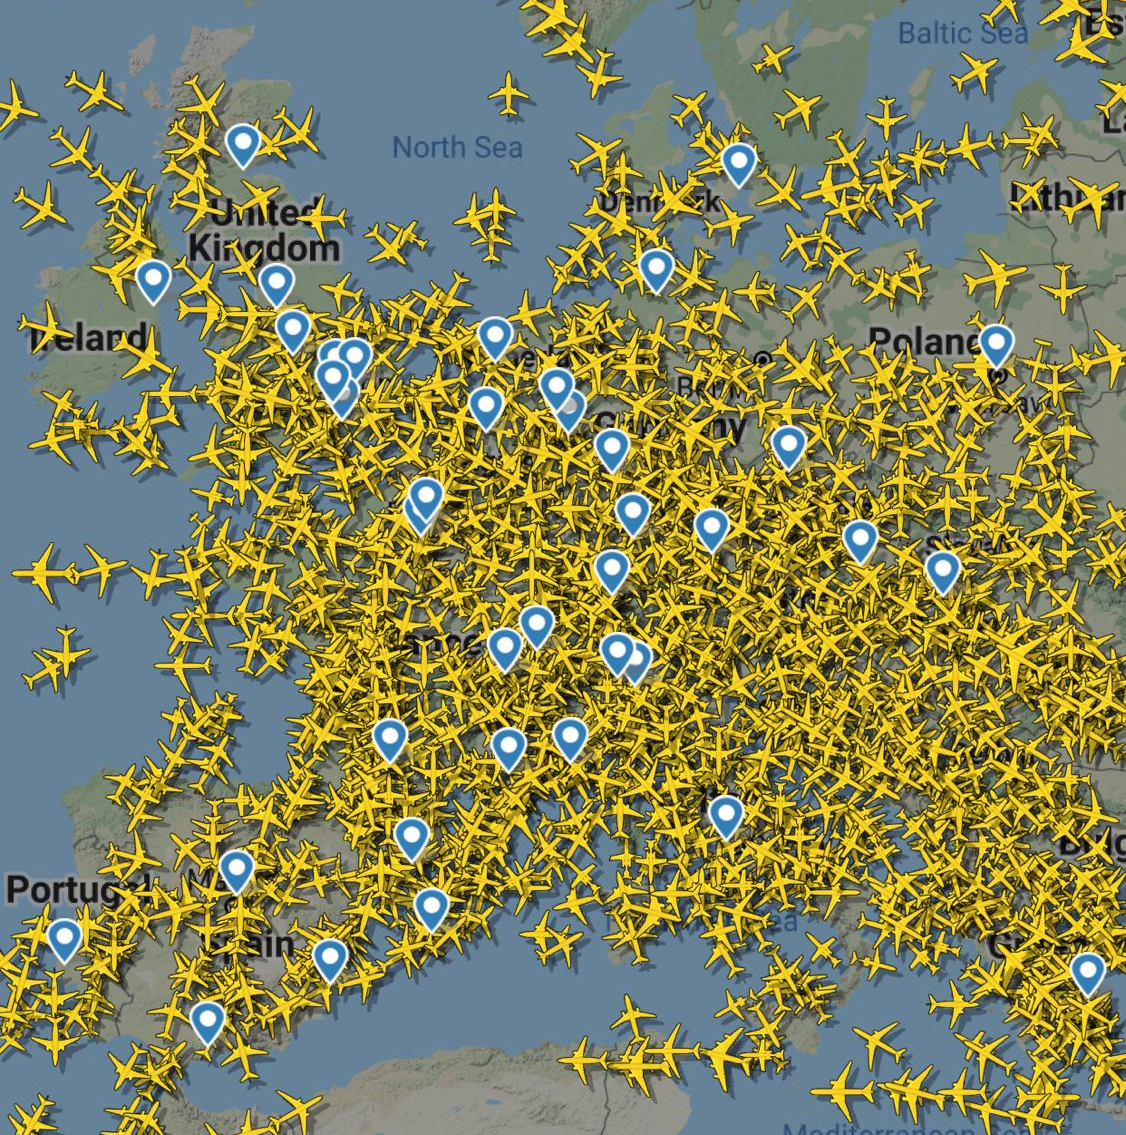 Hito en la aviación: superada la barrera de 100.000 vuelos - Noticias de aviación, aeropuertos y aerolíneas